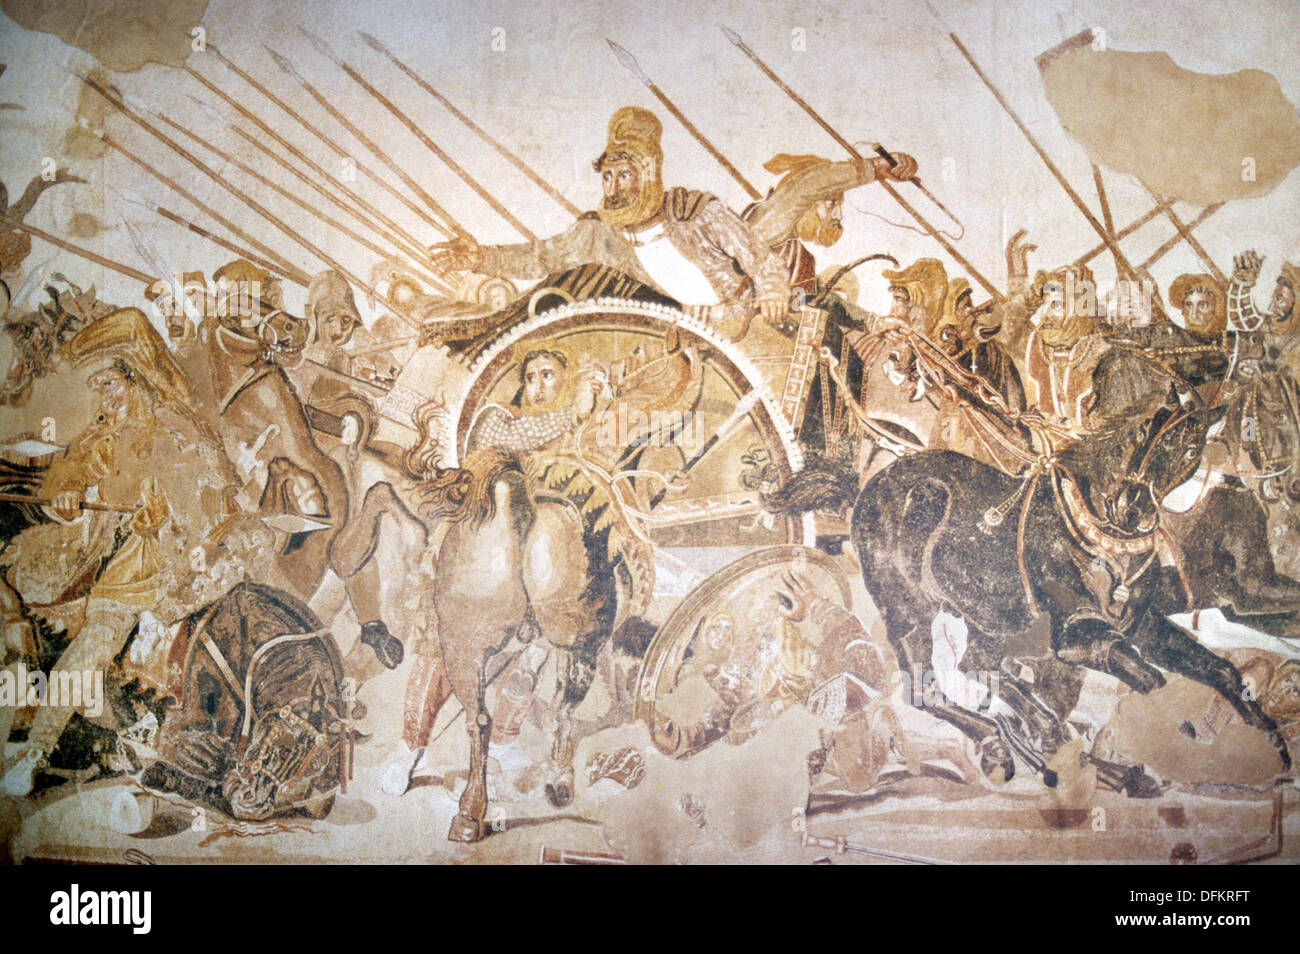 Mosaico Romano de Darío III de Persia (en Chariot) en la primera Batalla de Issus (333BC) Contra Alejandro Magno de Macedonia Foto de stock